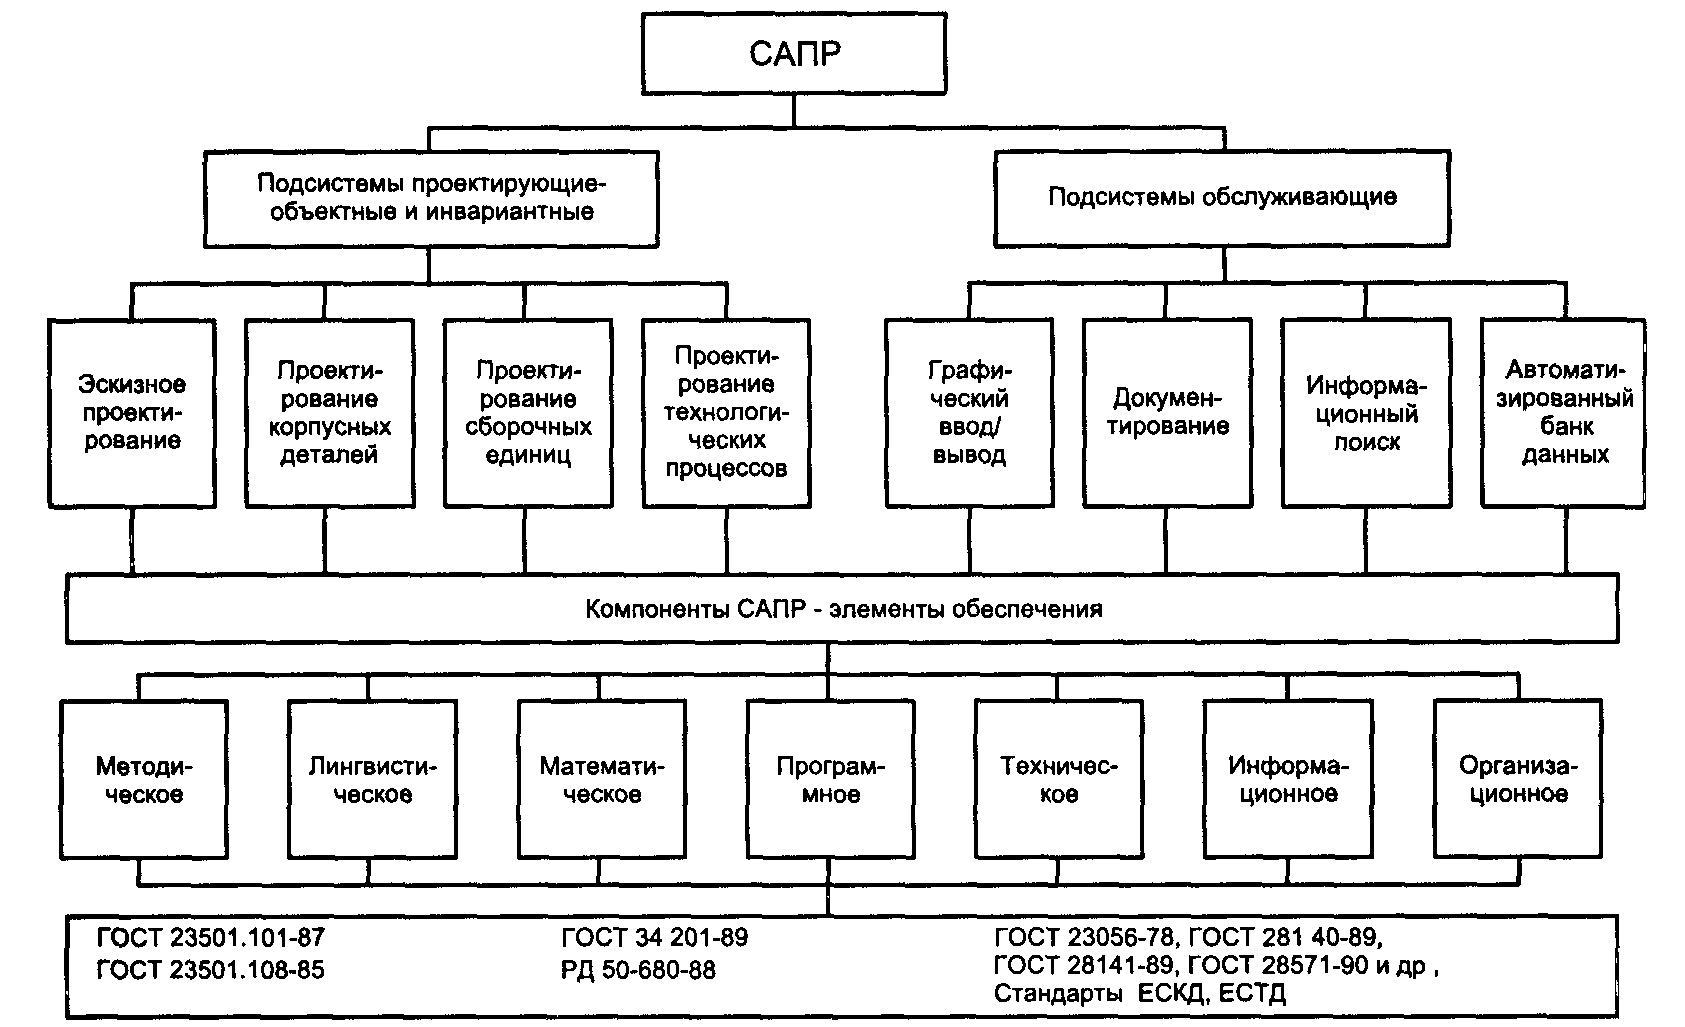 Подразделение предметов. Состав САПР-систем:. Структурная схема САПР. Структура технического обеспечения САПР. Структурные элементы САПР.